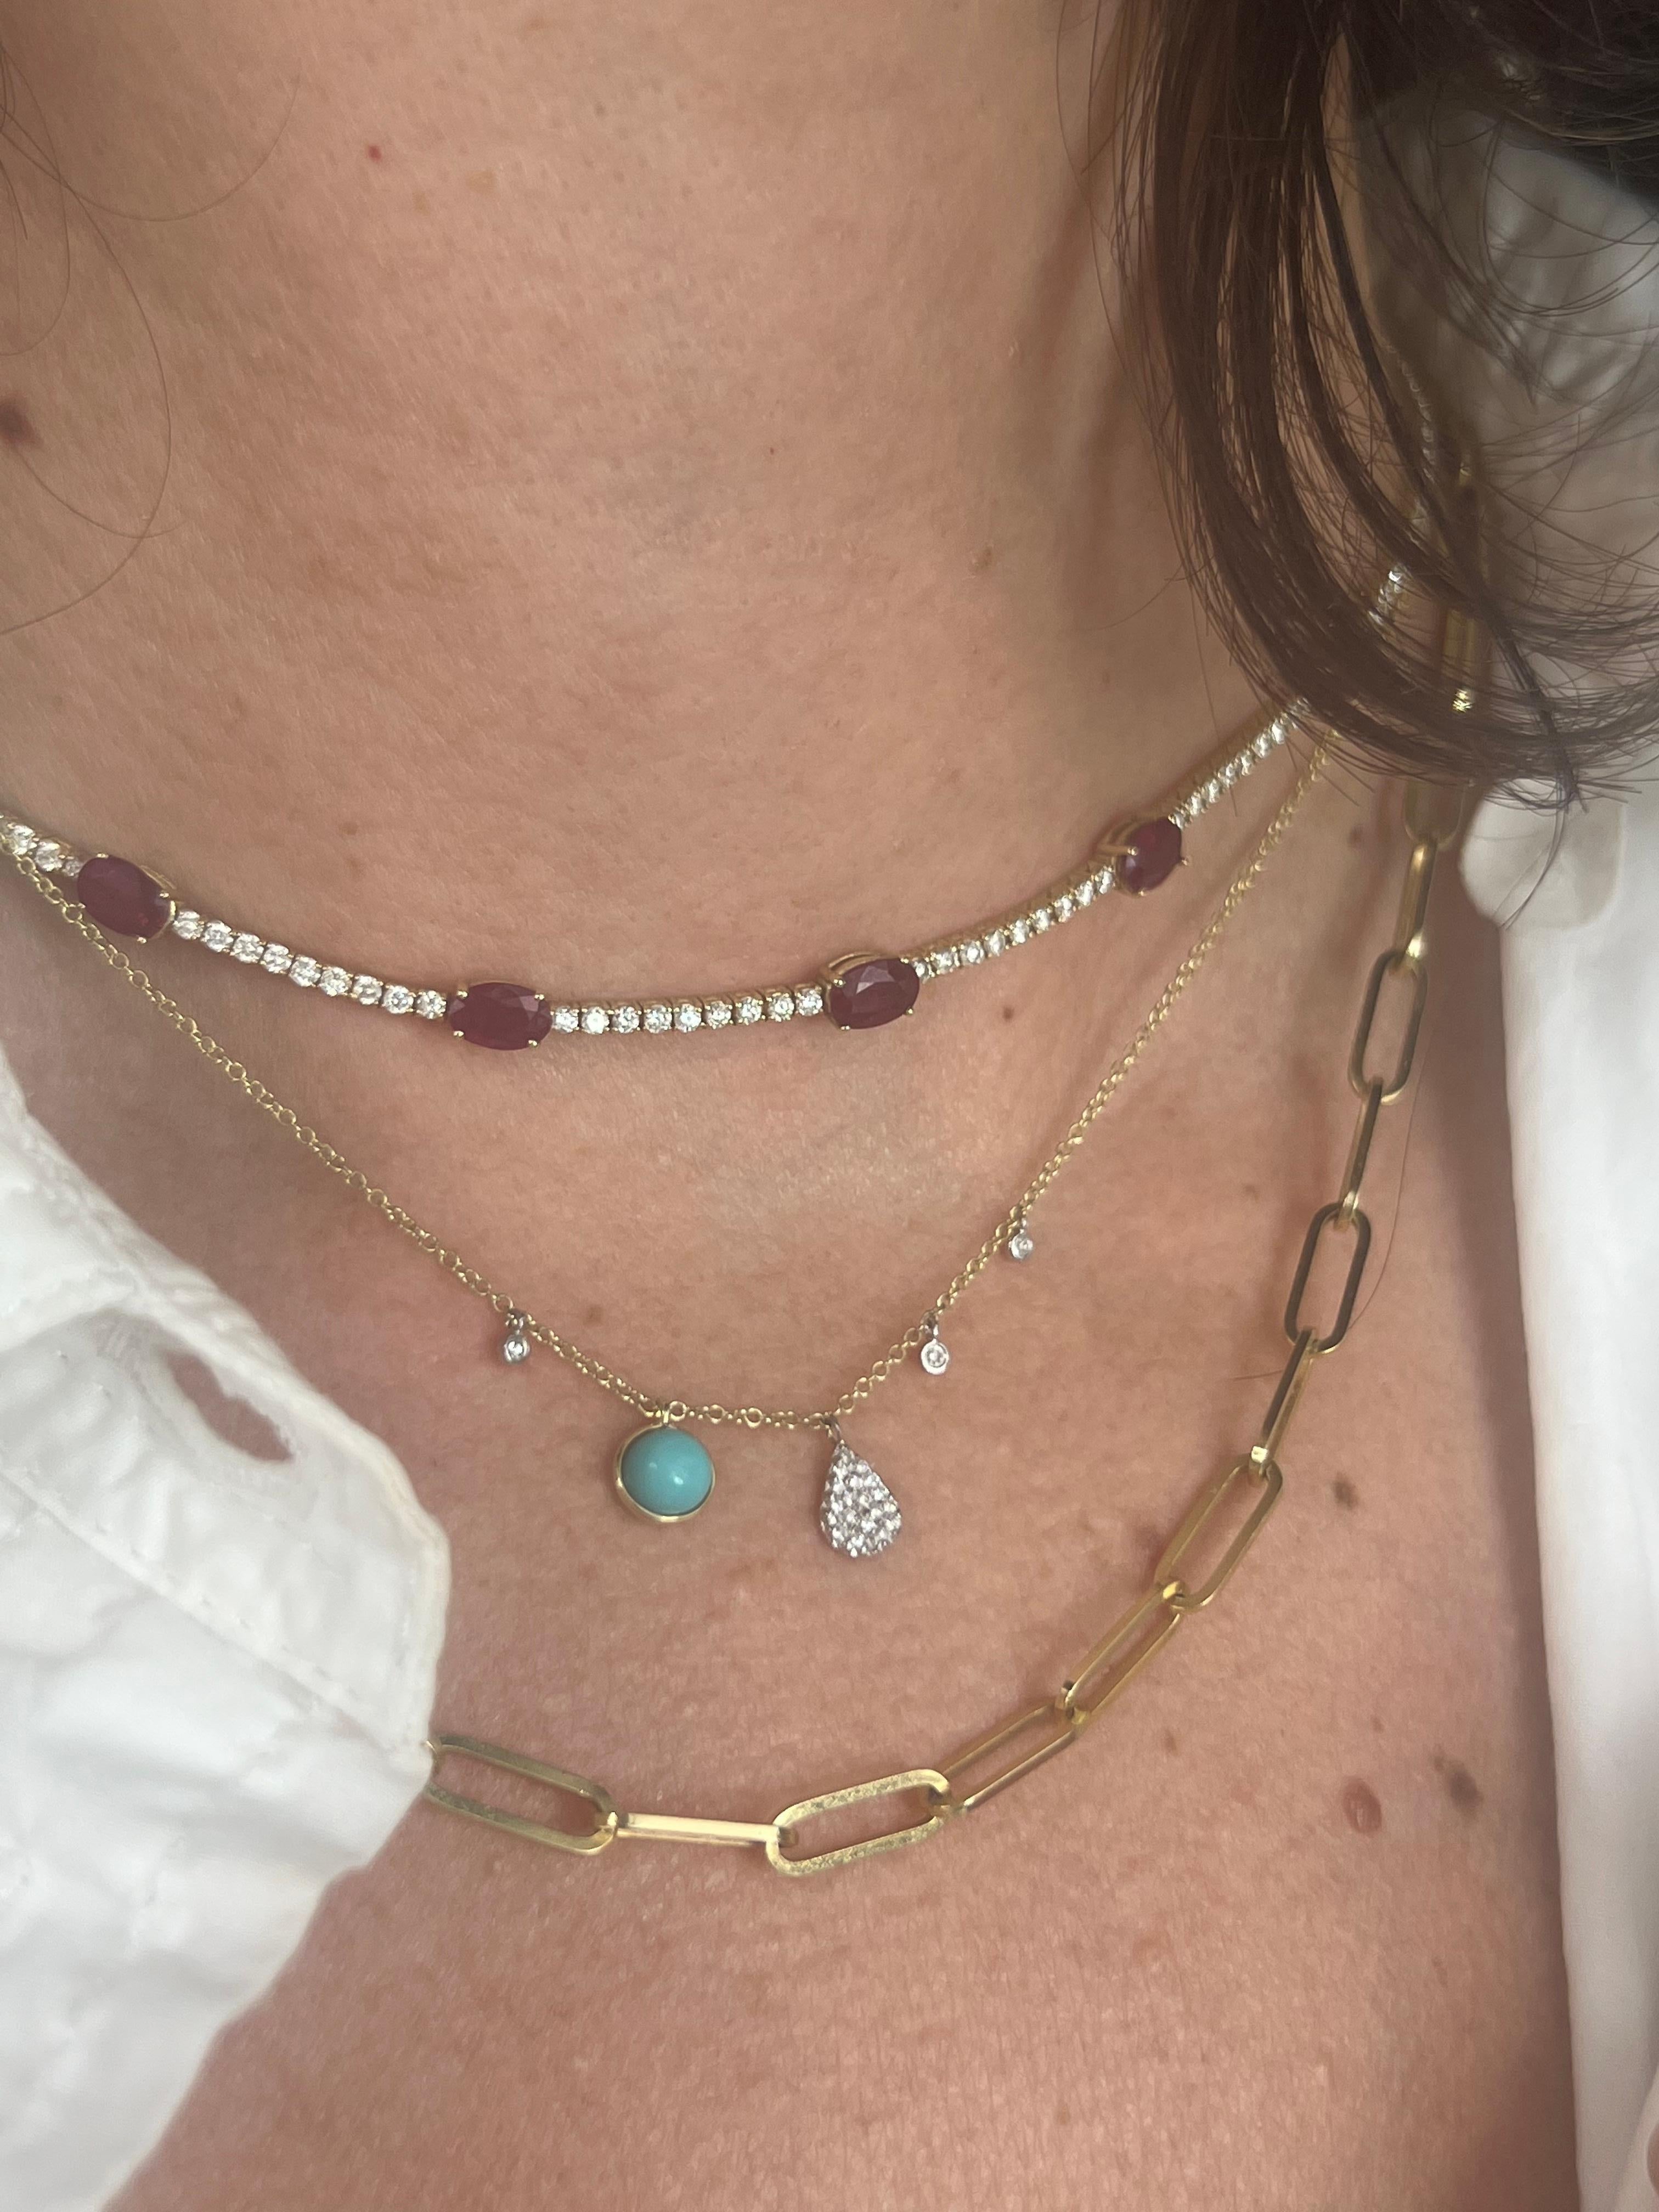 14K Gelbgold Türkis und Diamant Anhänger Halskette. 

Meira T ist eine renommierte Schmuckdesignerin, die seit über zwei Jahrzehnten exquisite Stücke entwirft. Ihre Entwürfe sind von ihren Reisen in die ganze Welt inspiriert, und ihre Stücke werden